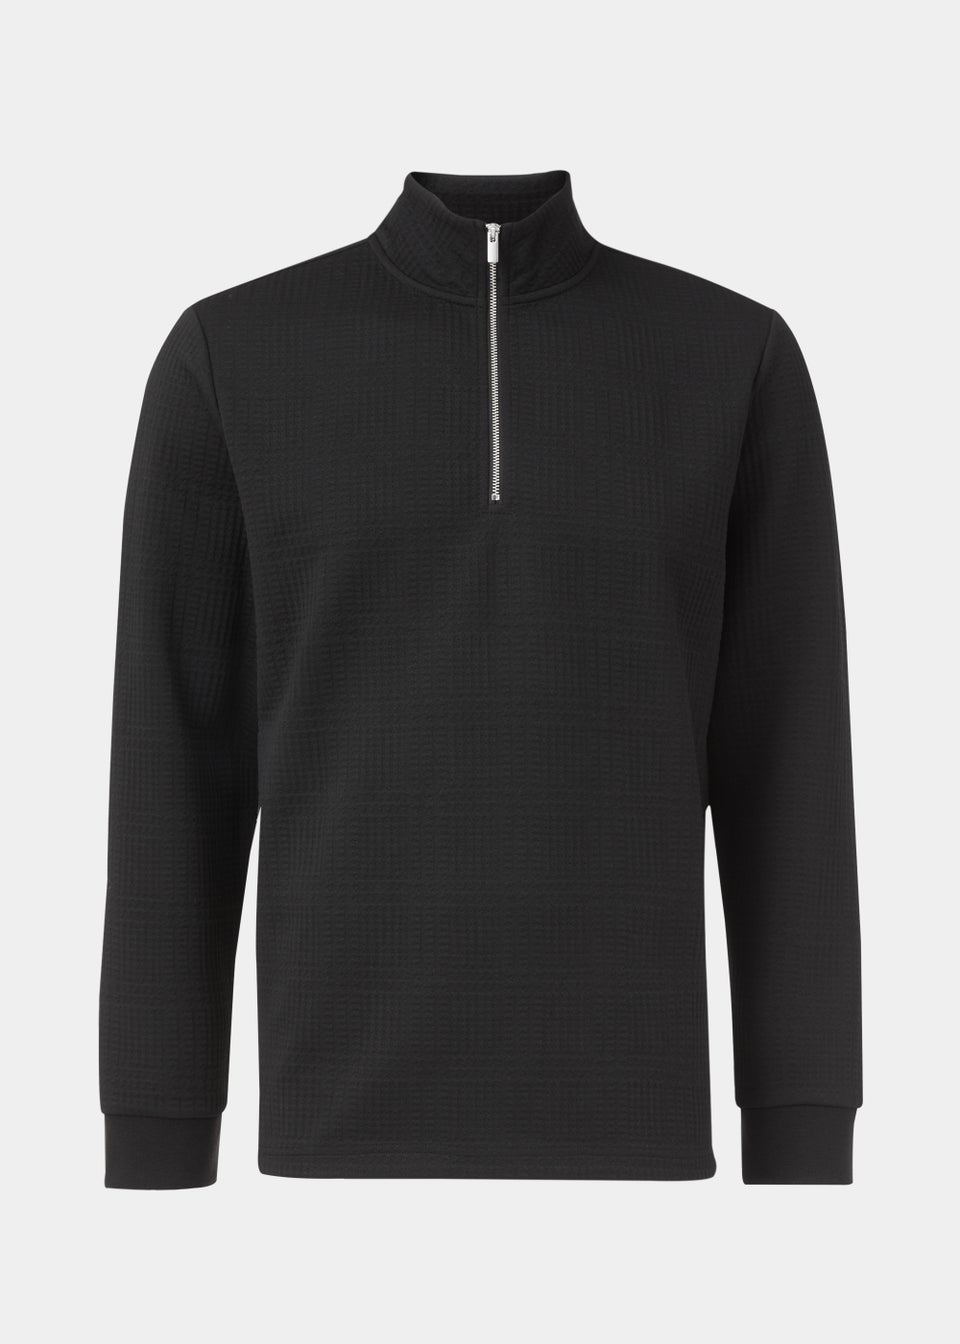 Black Textured Half Zip Sweatshirt